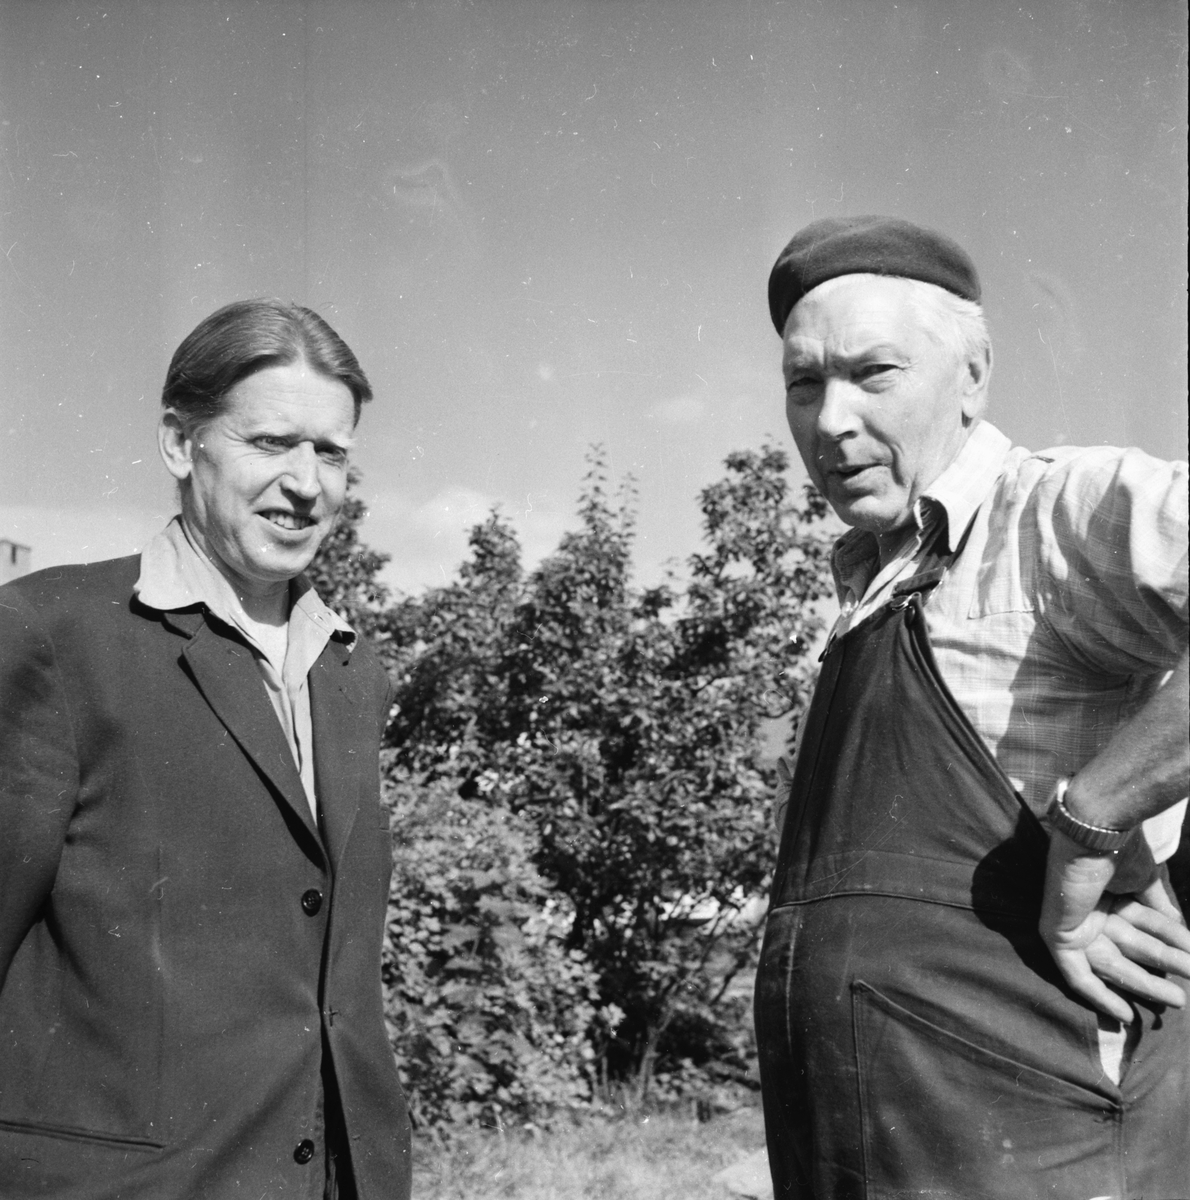 Sundåker
Gösta Hedlund, John Johansson
Augusti 1958